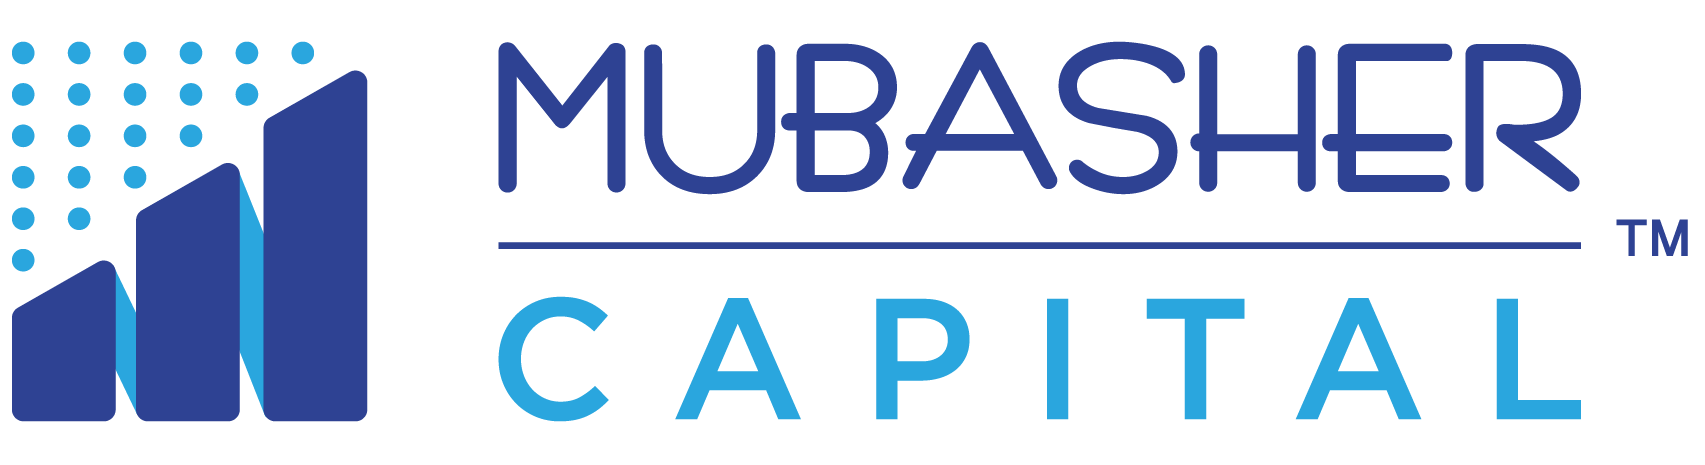 Mubahser Capital Logo-01